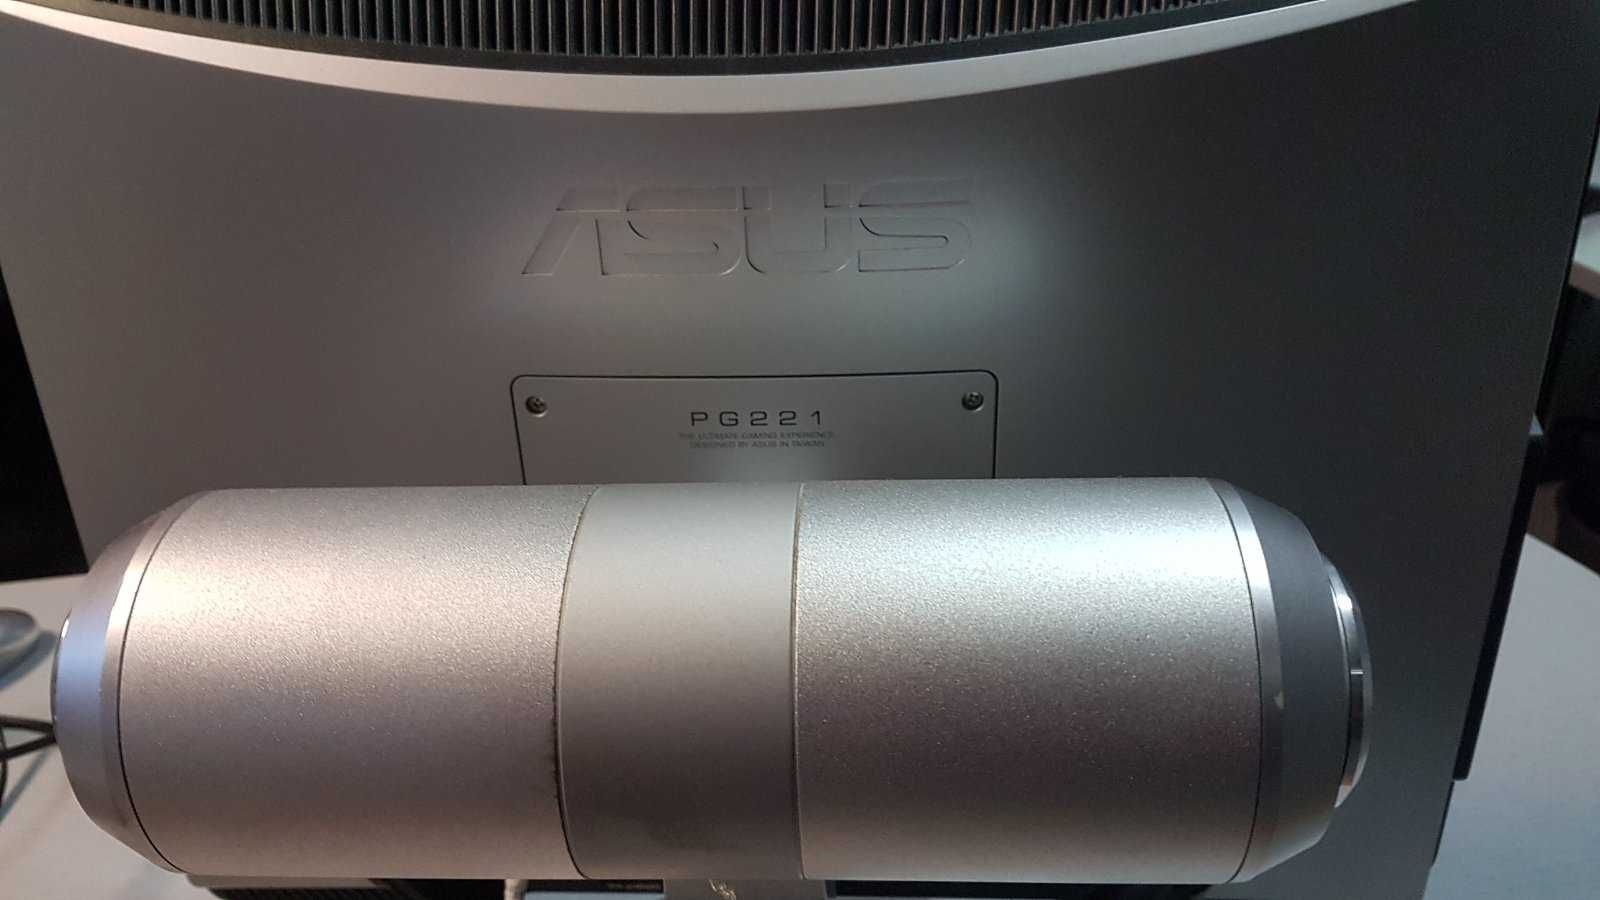 Продам монитор Asus PG221, в полностью рабочем состоянии.